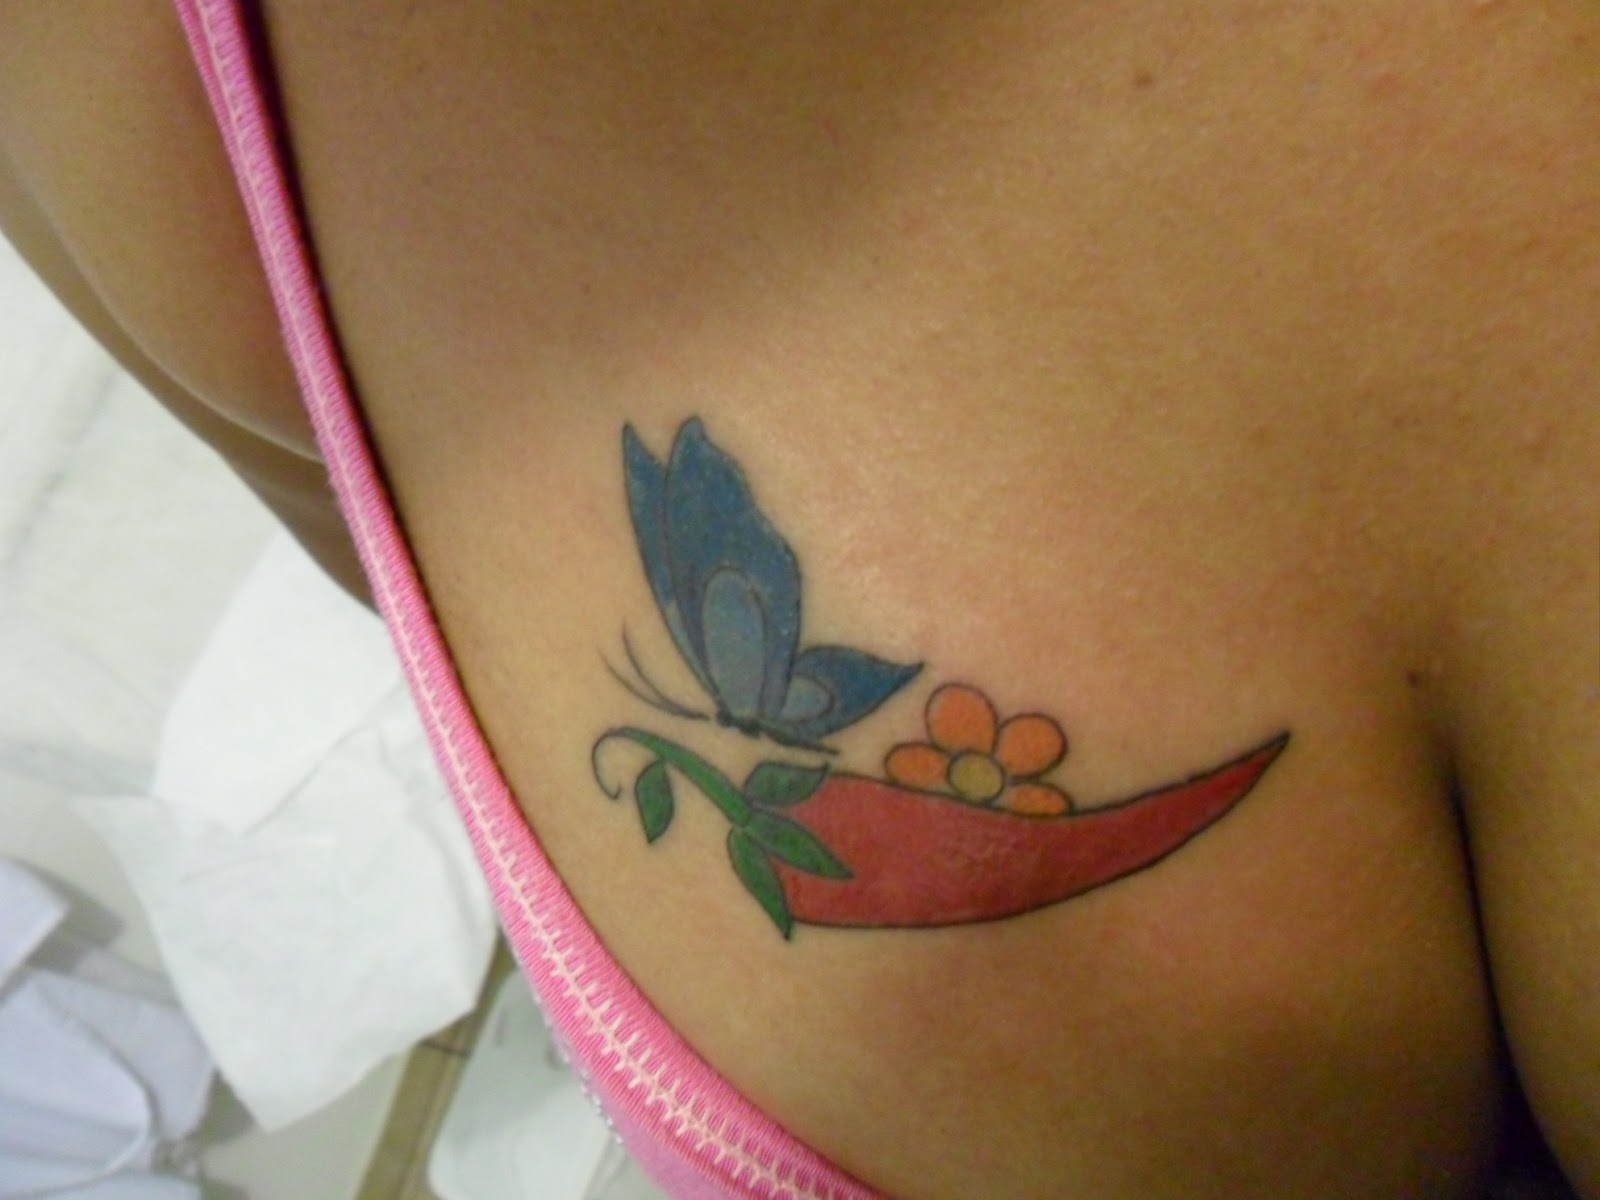 Leco's Tattoo: Pimenta